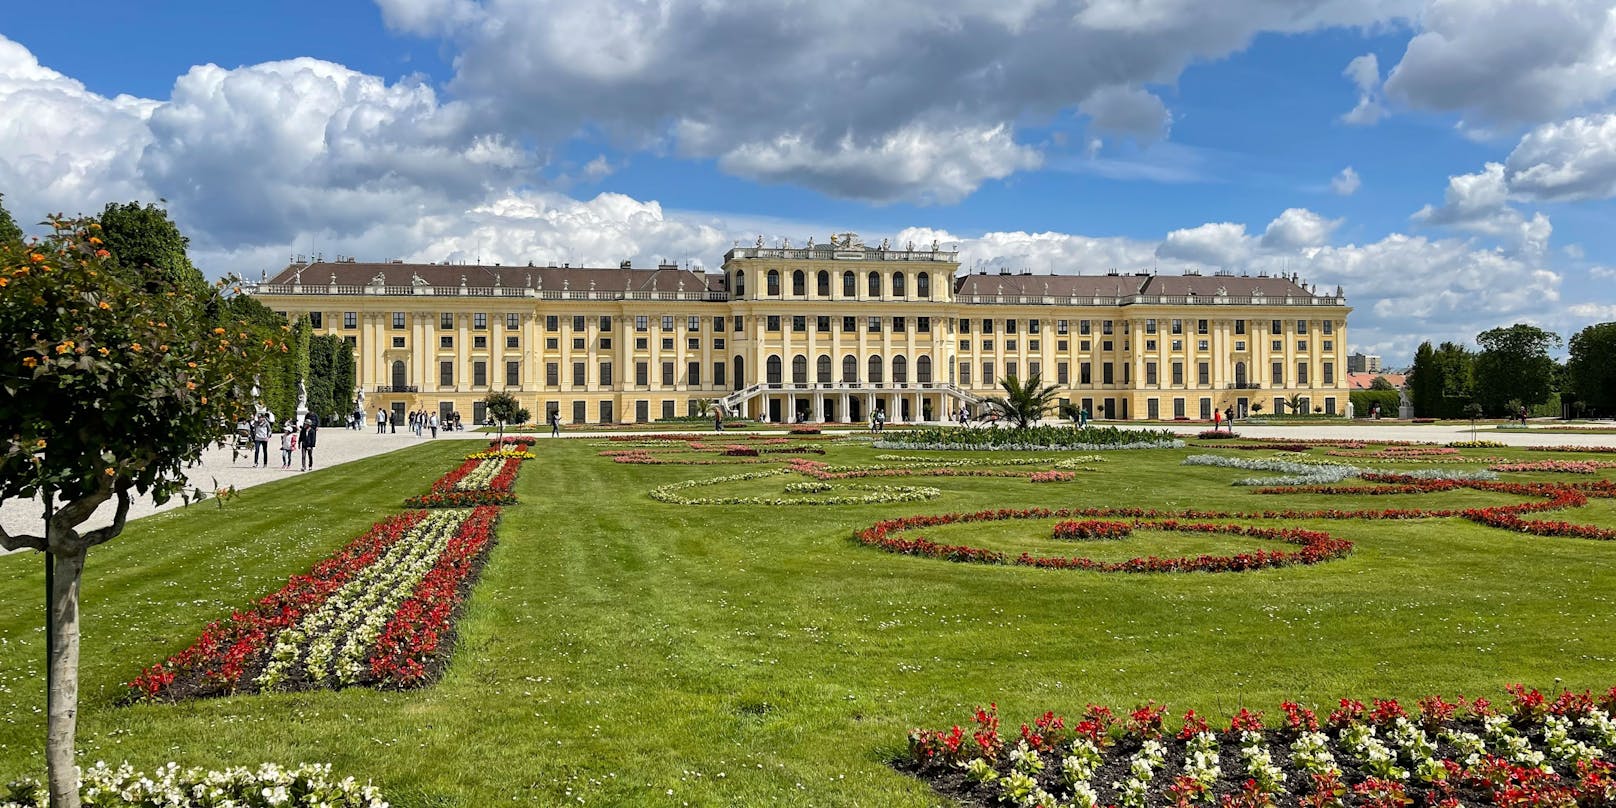 Das Schloss Schönbrunn in Wien belegte im internationalen Ranking von "TripAdvisor" Platz 10.